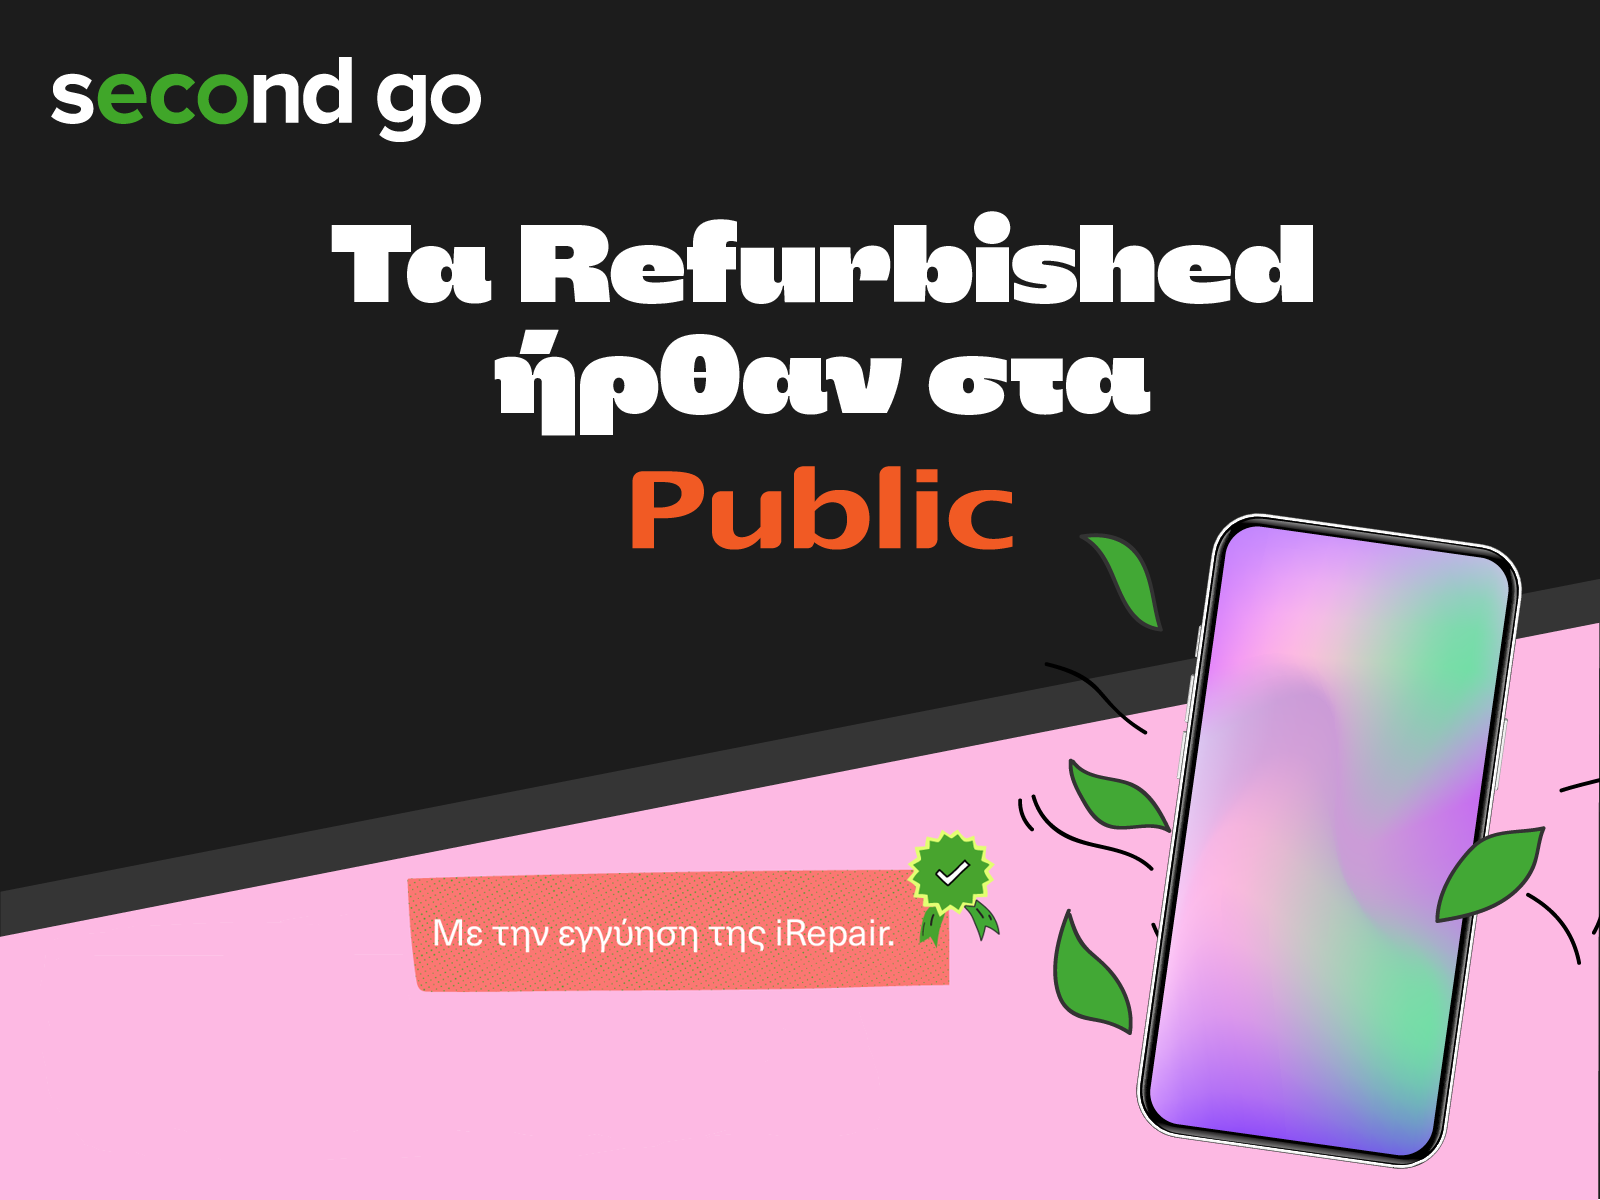 Περισσότερες πληροφορίες για "second go: Τα καλύτερα “μεταχειρισμένα” είναι τα refurbished του Public!"